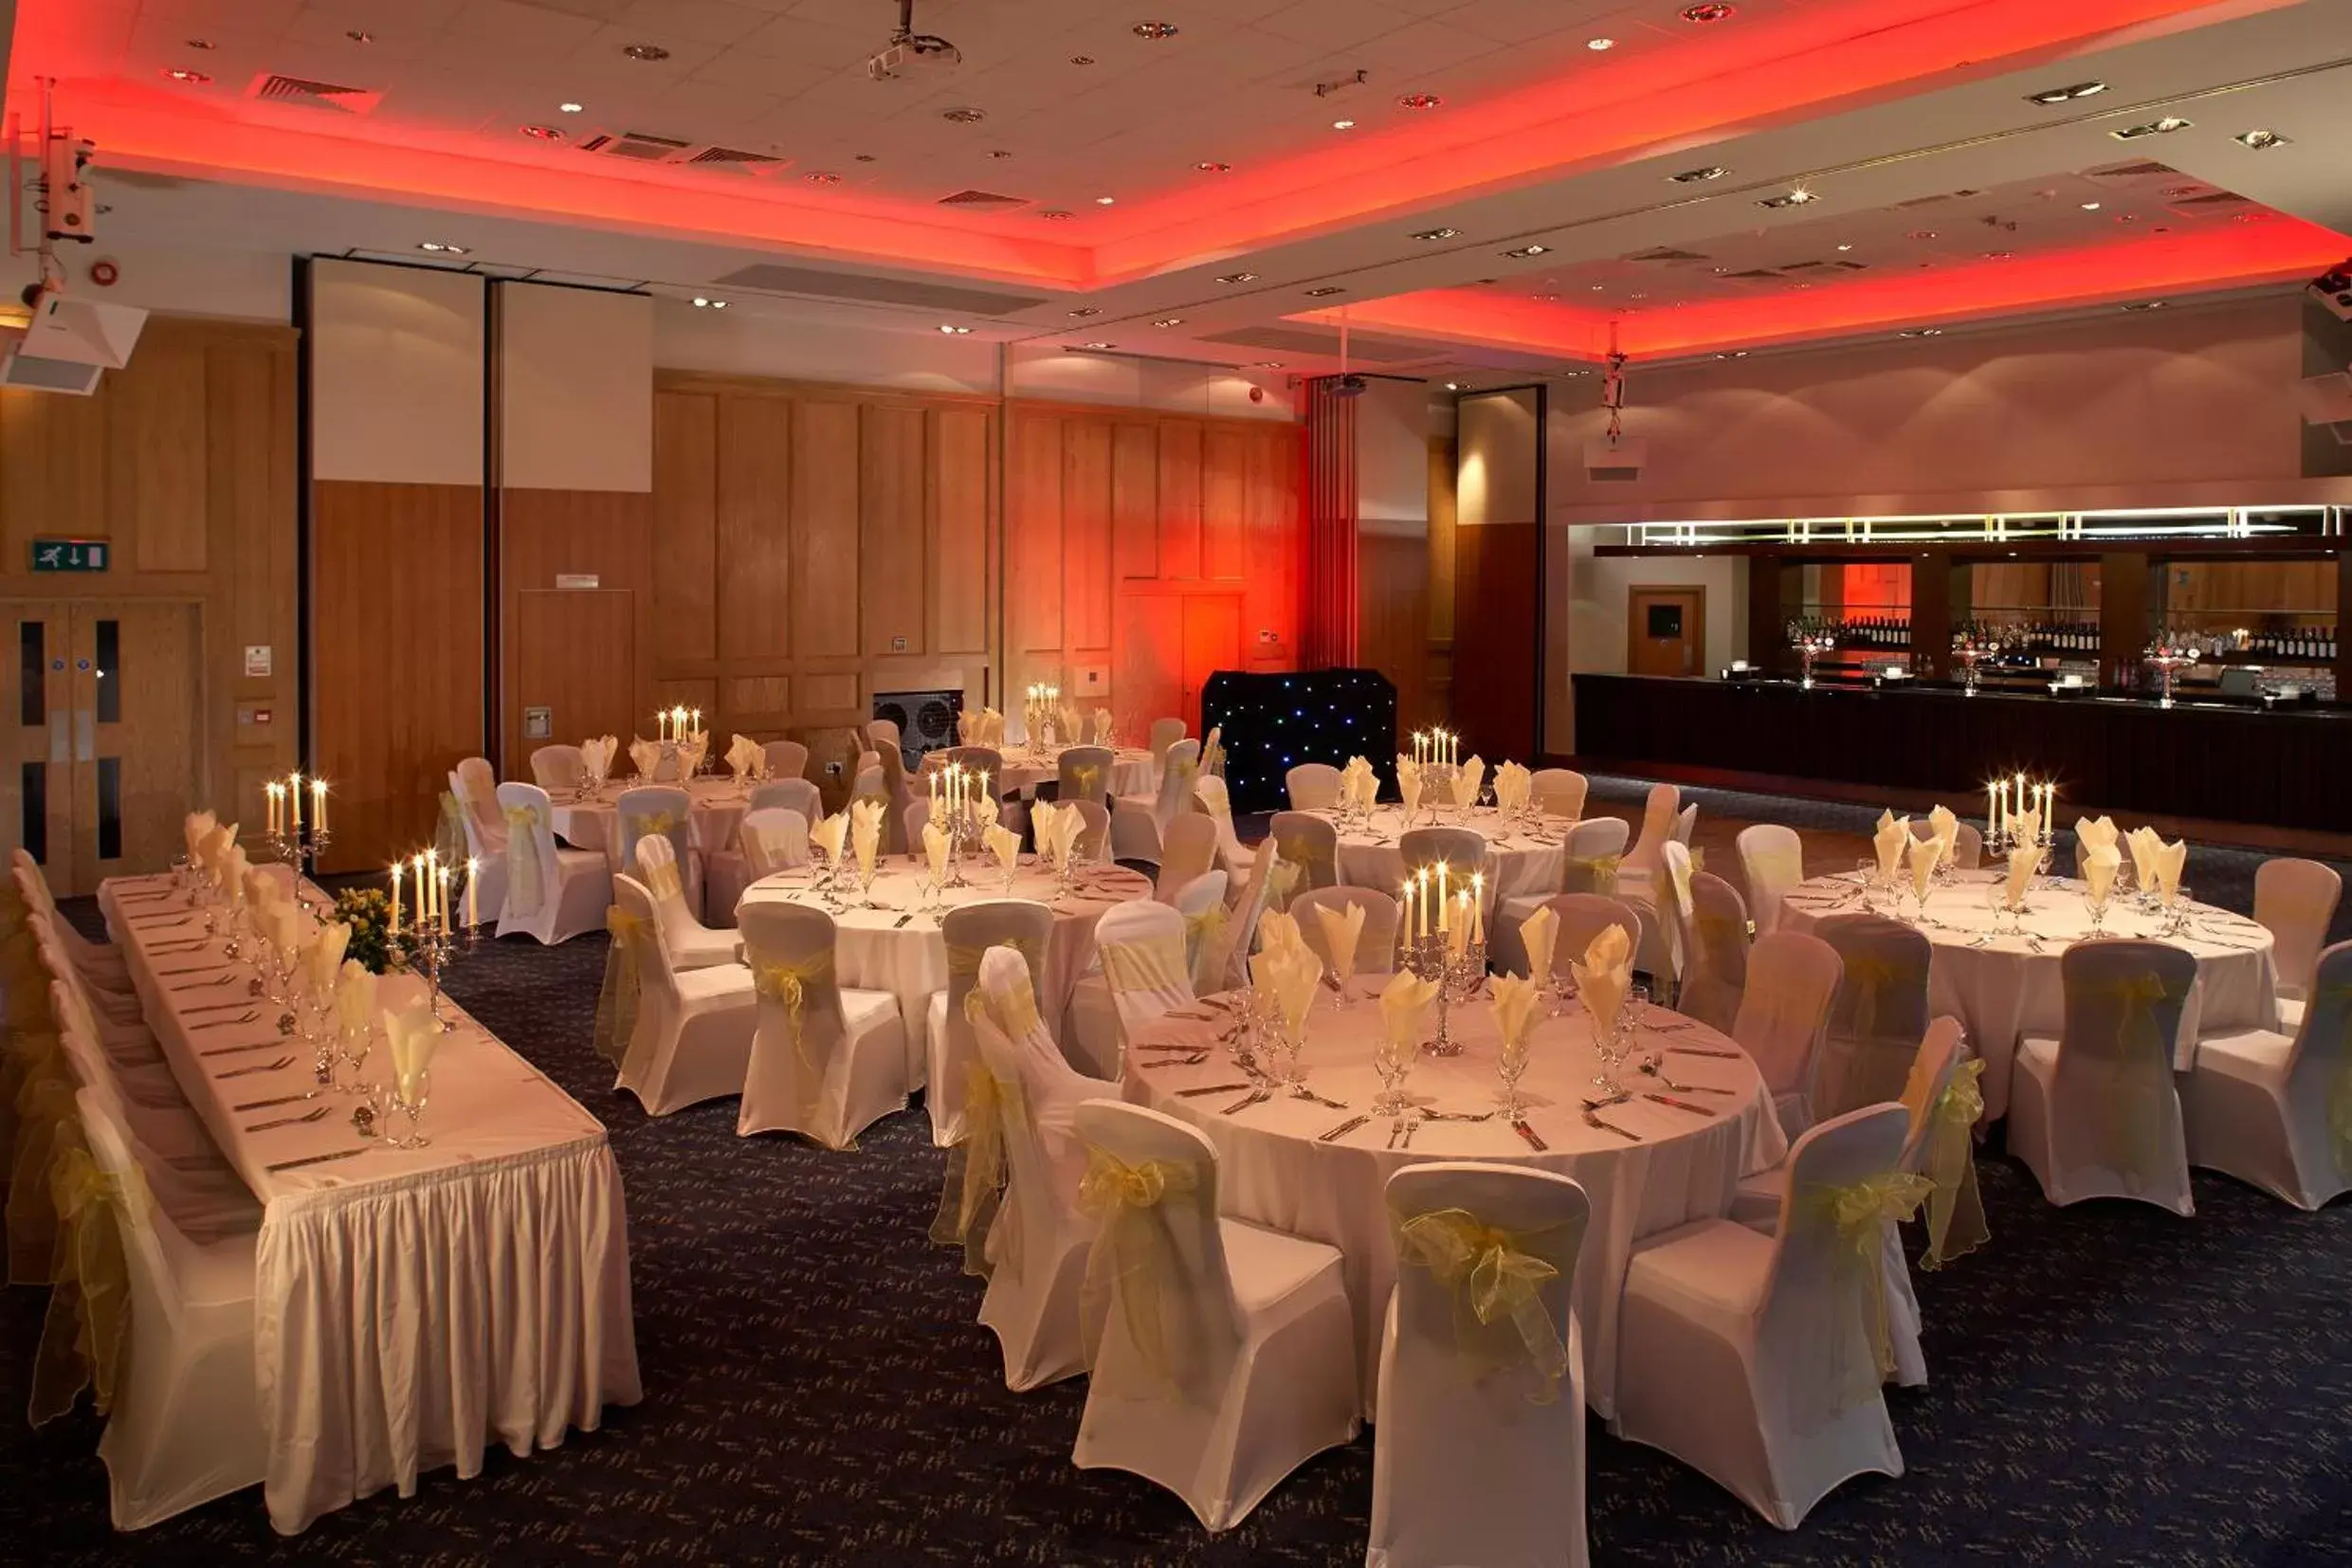 Banquet/Function facilities, Banquet Facilities in Mandolay Hotel Guildford